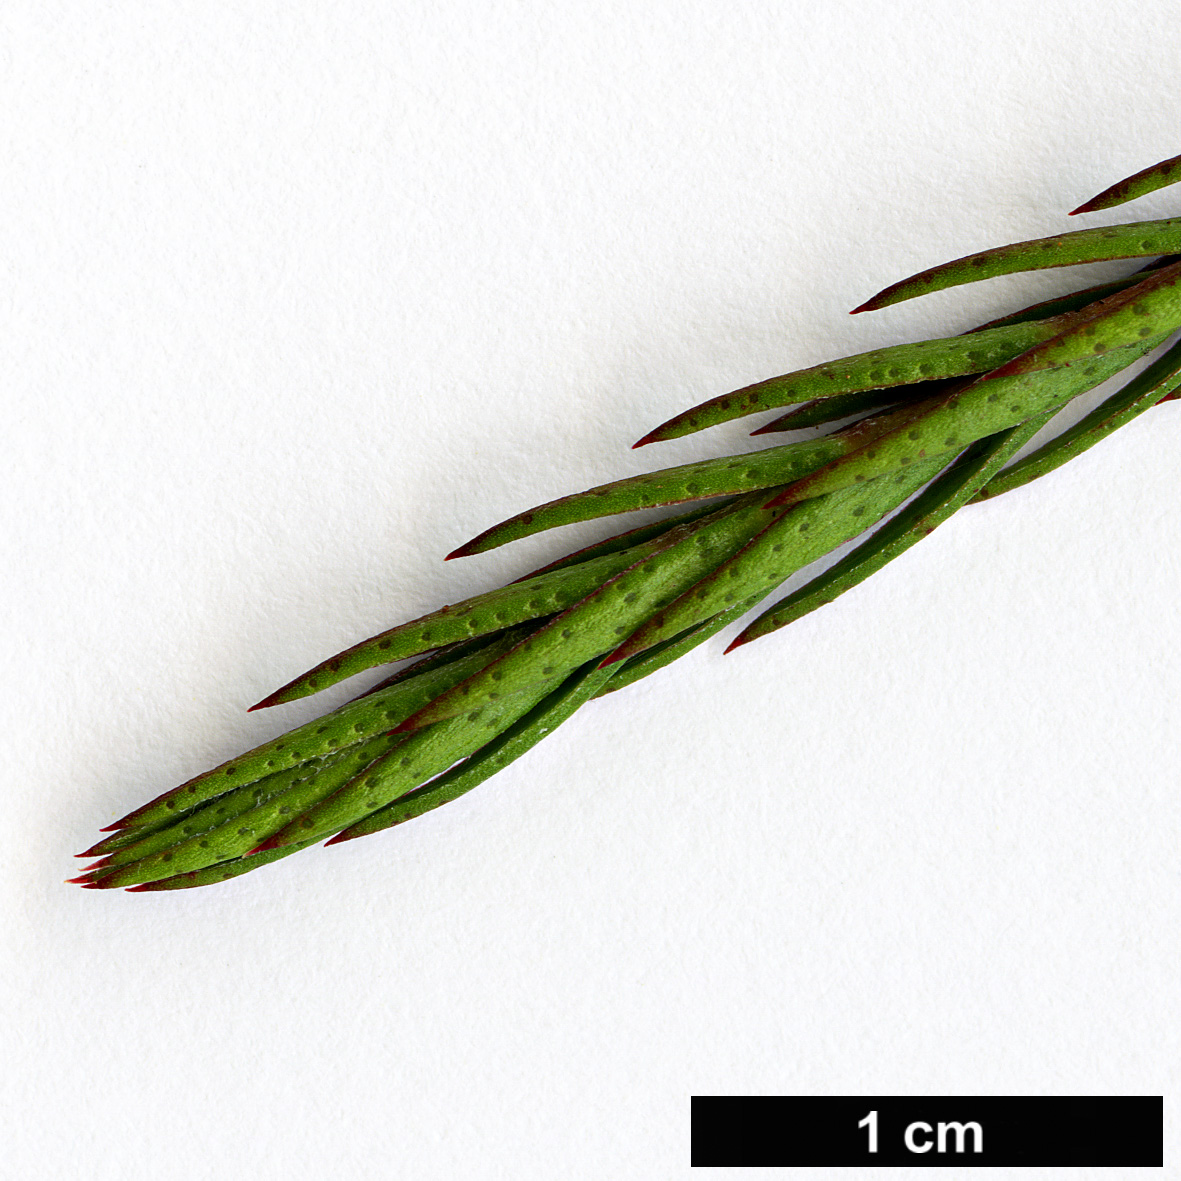 High resolution image: Family: Myrtaceae - Genus: Melaleuca - Taxon: wilsonii